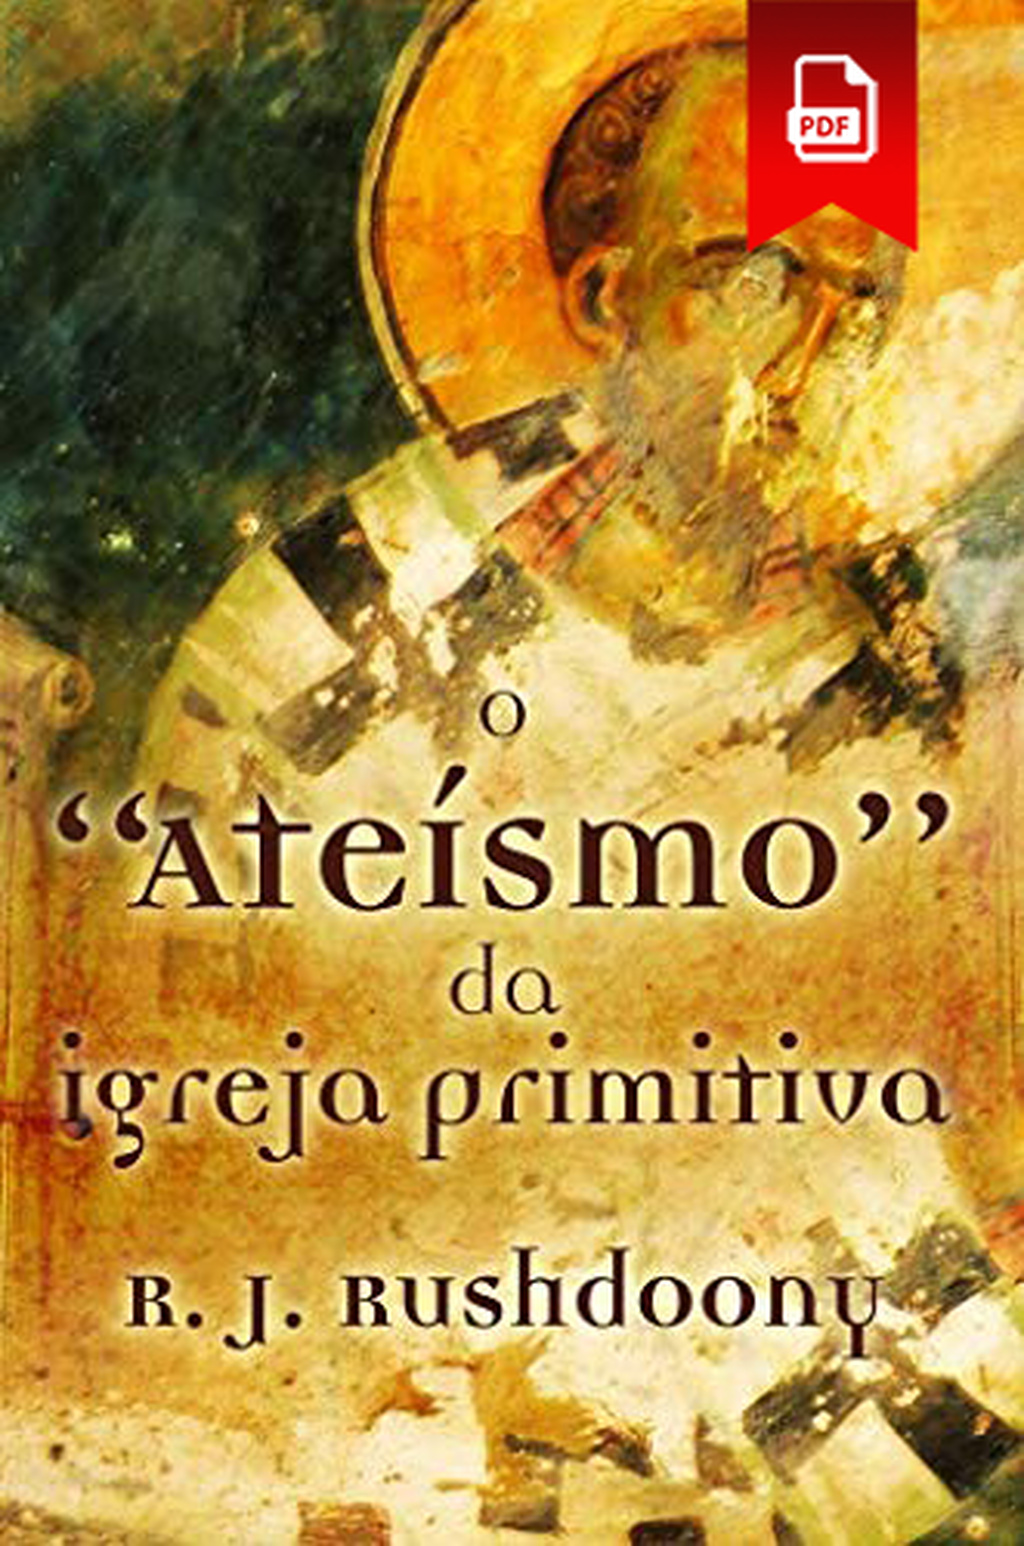 Atheism Portuguese